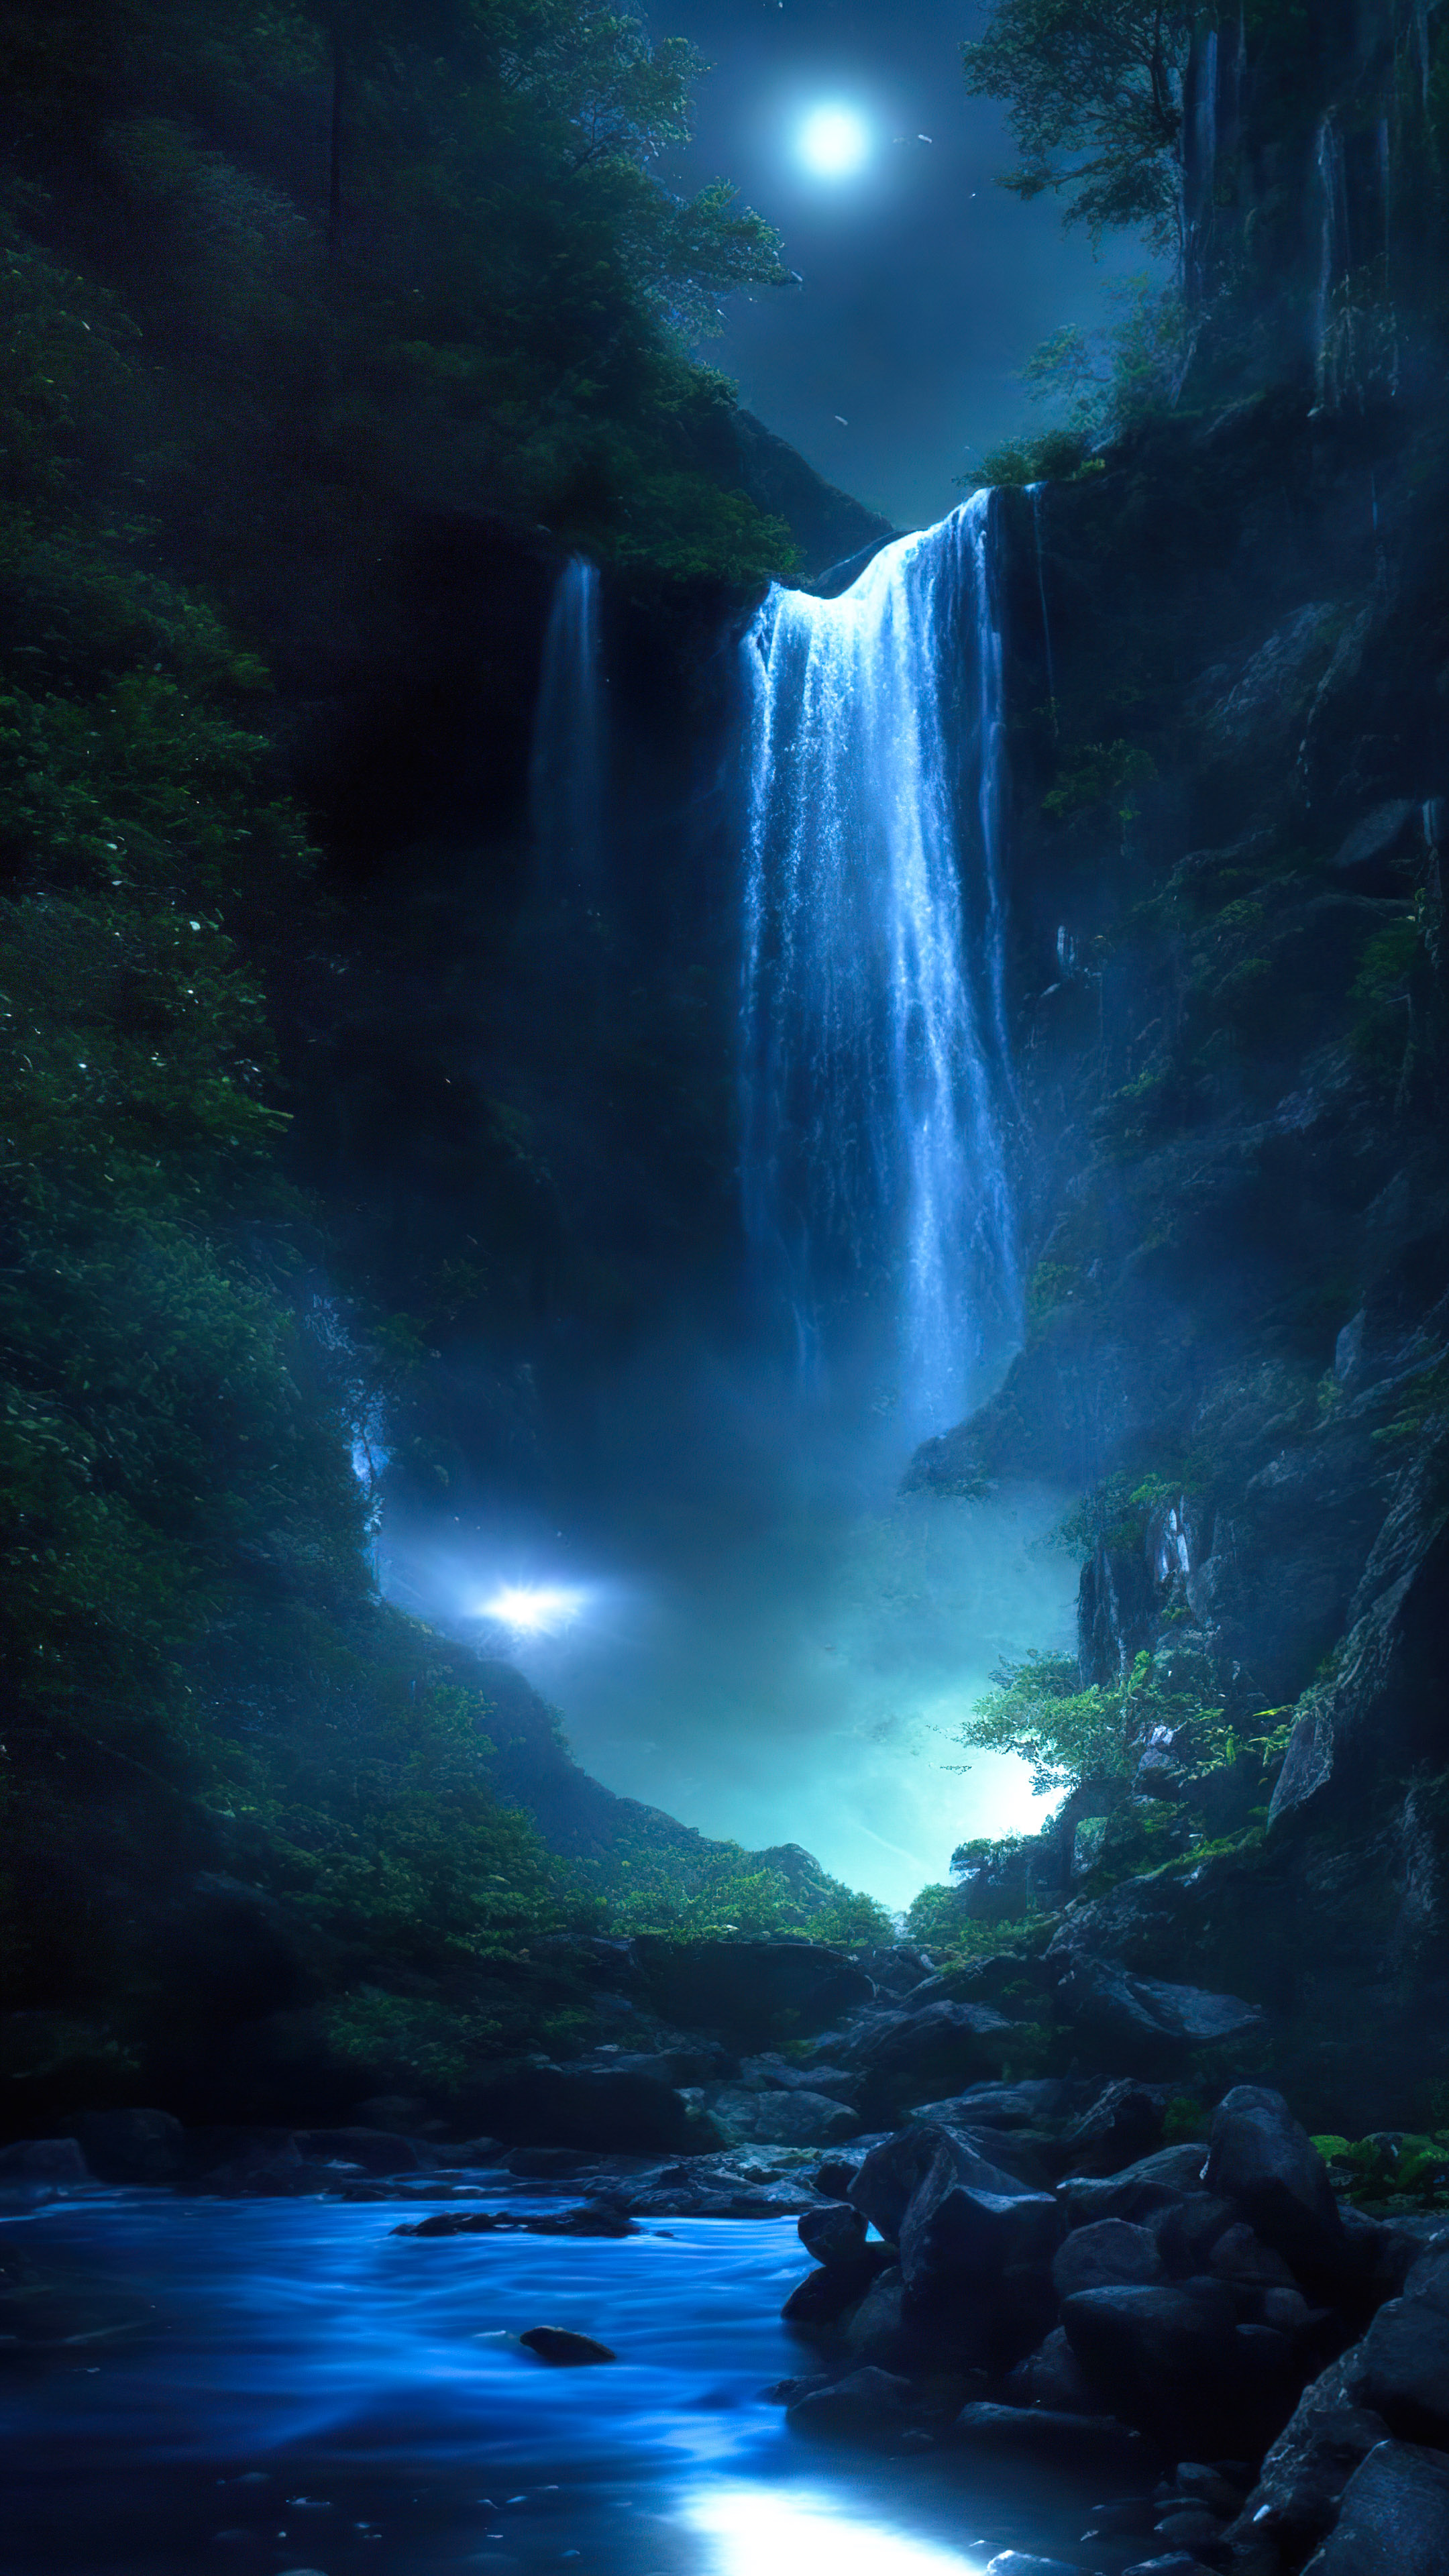 Capturez l'essence du paradis avec notre fond d'écran de belle cascade, présentant une cascade magique illuminée par la lune, avec des lucioles dansant autour de ses eaux déferlantes. 